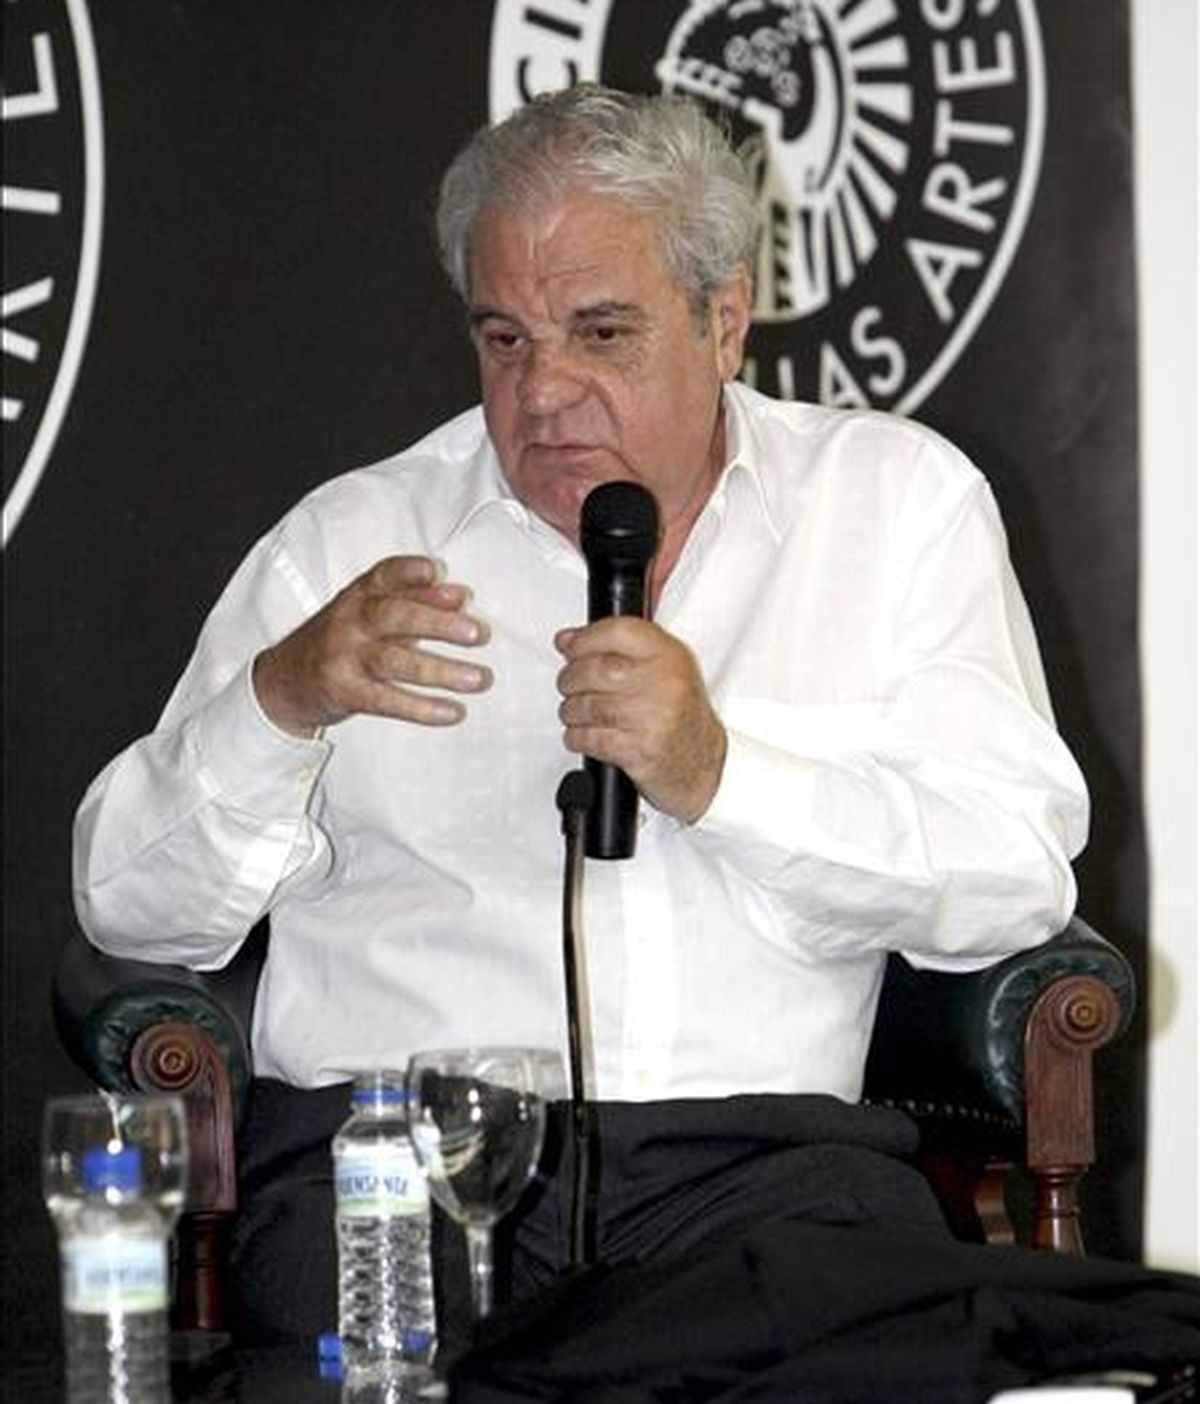 El escritor barcelonés Juan Marsé, quien recibió el Premio Cervantes, máximo galardón de las letras hispanas, durante el encuentro que mantuvo con sus lectores, en el Círculo de Bellas Artes de Madrid. EFE